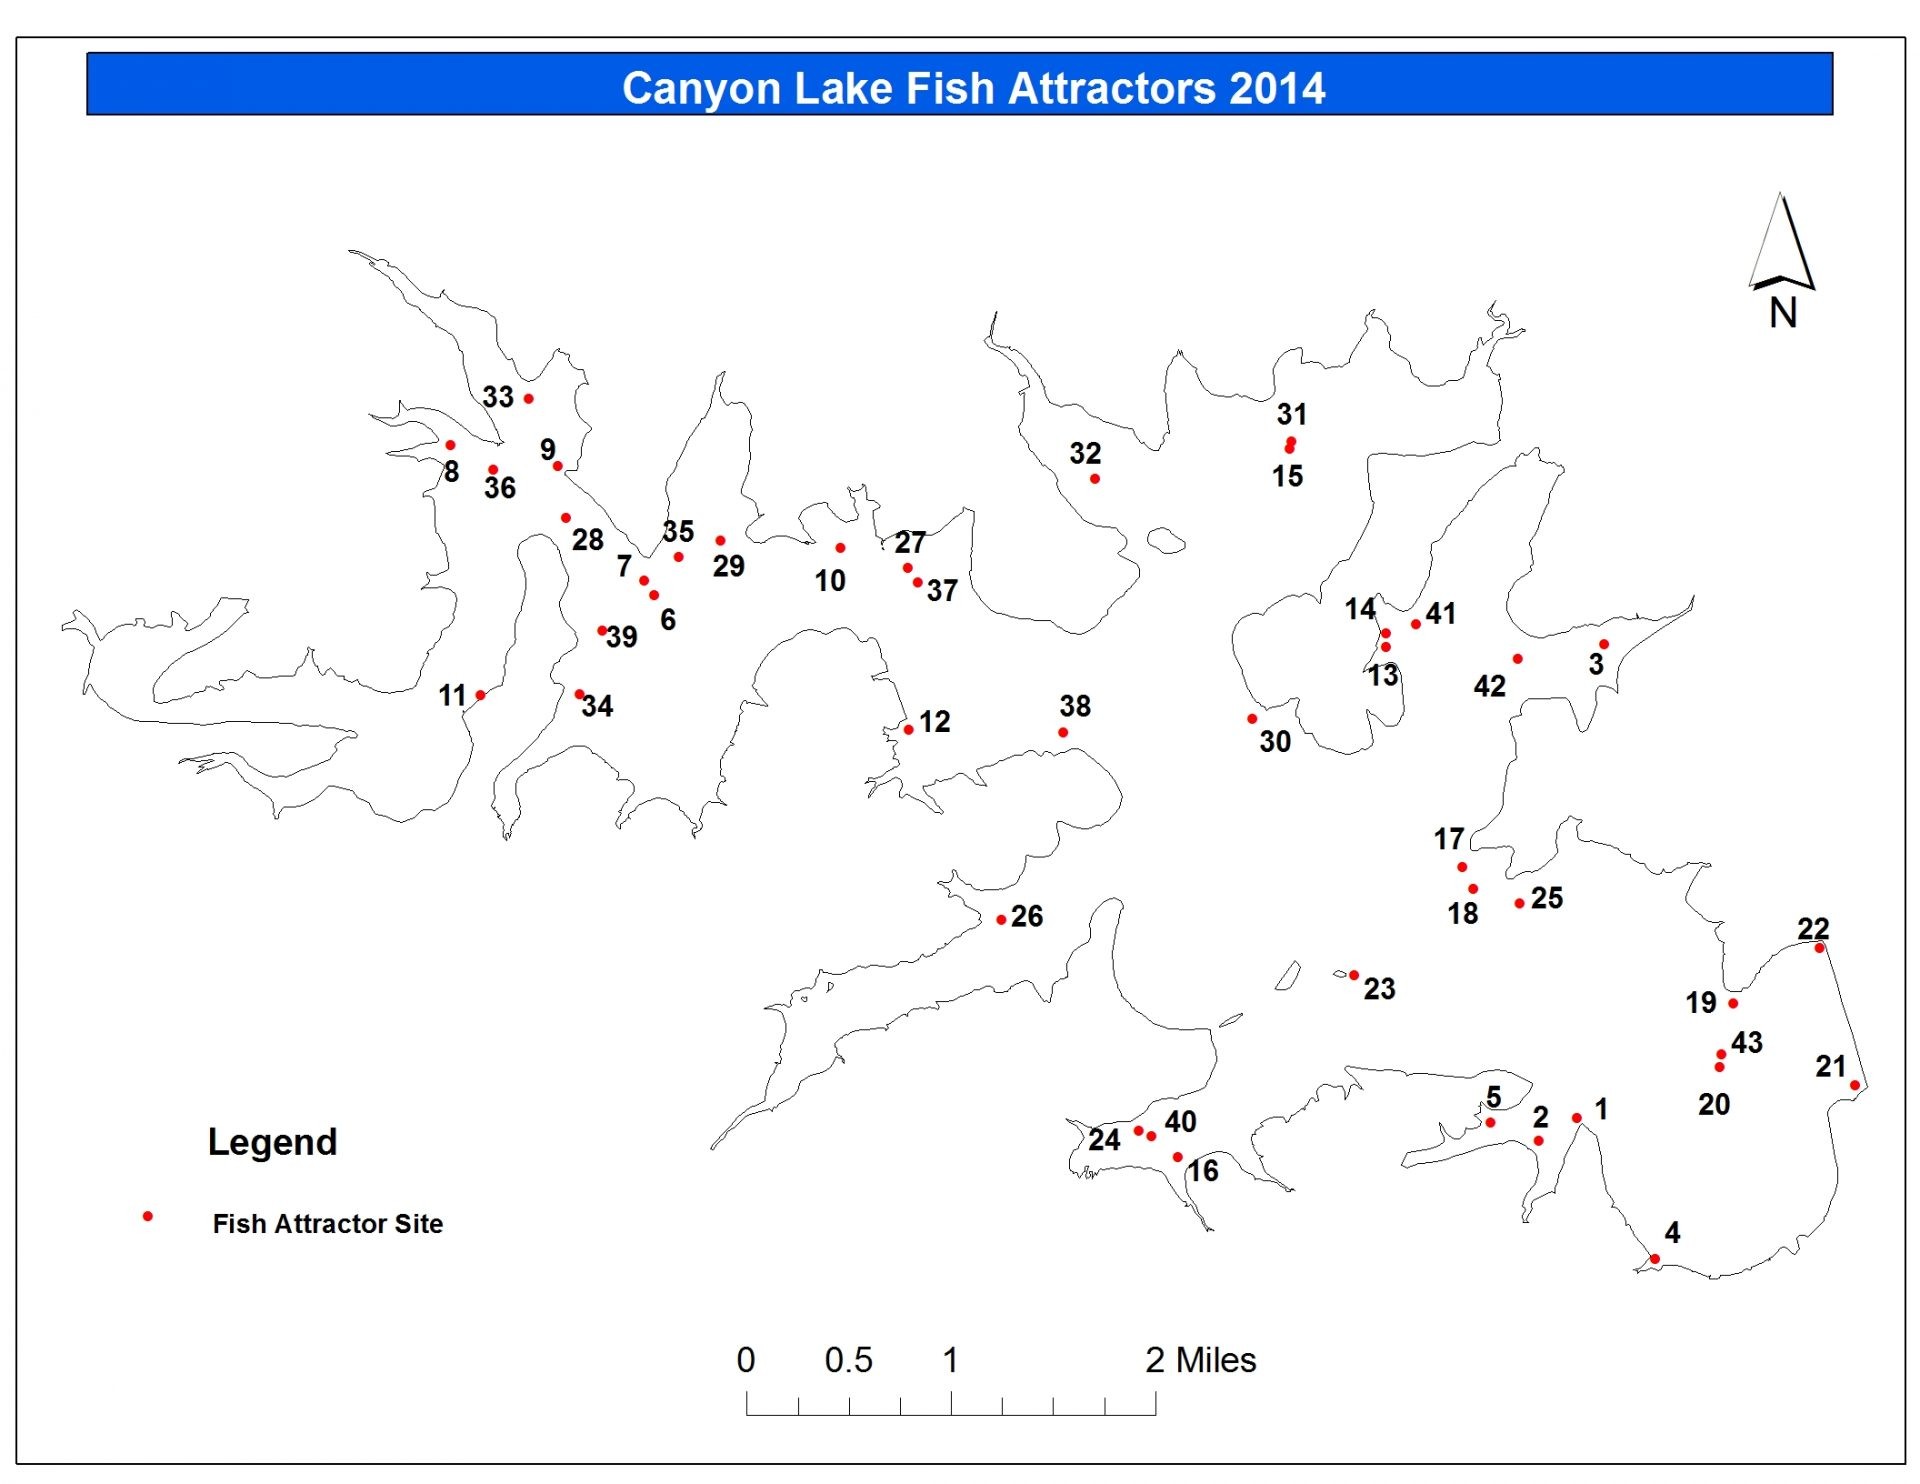 Canyon Lake Fish Attractors Map